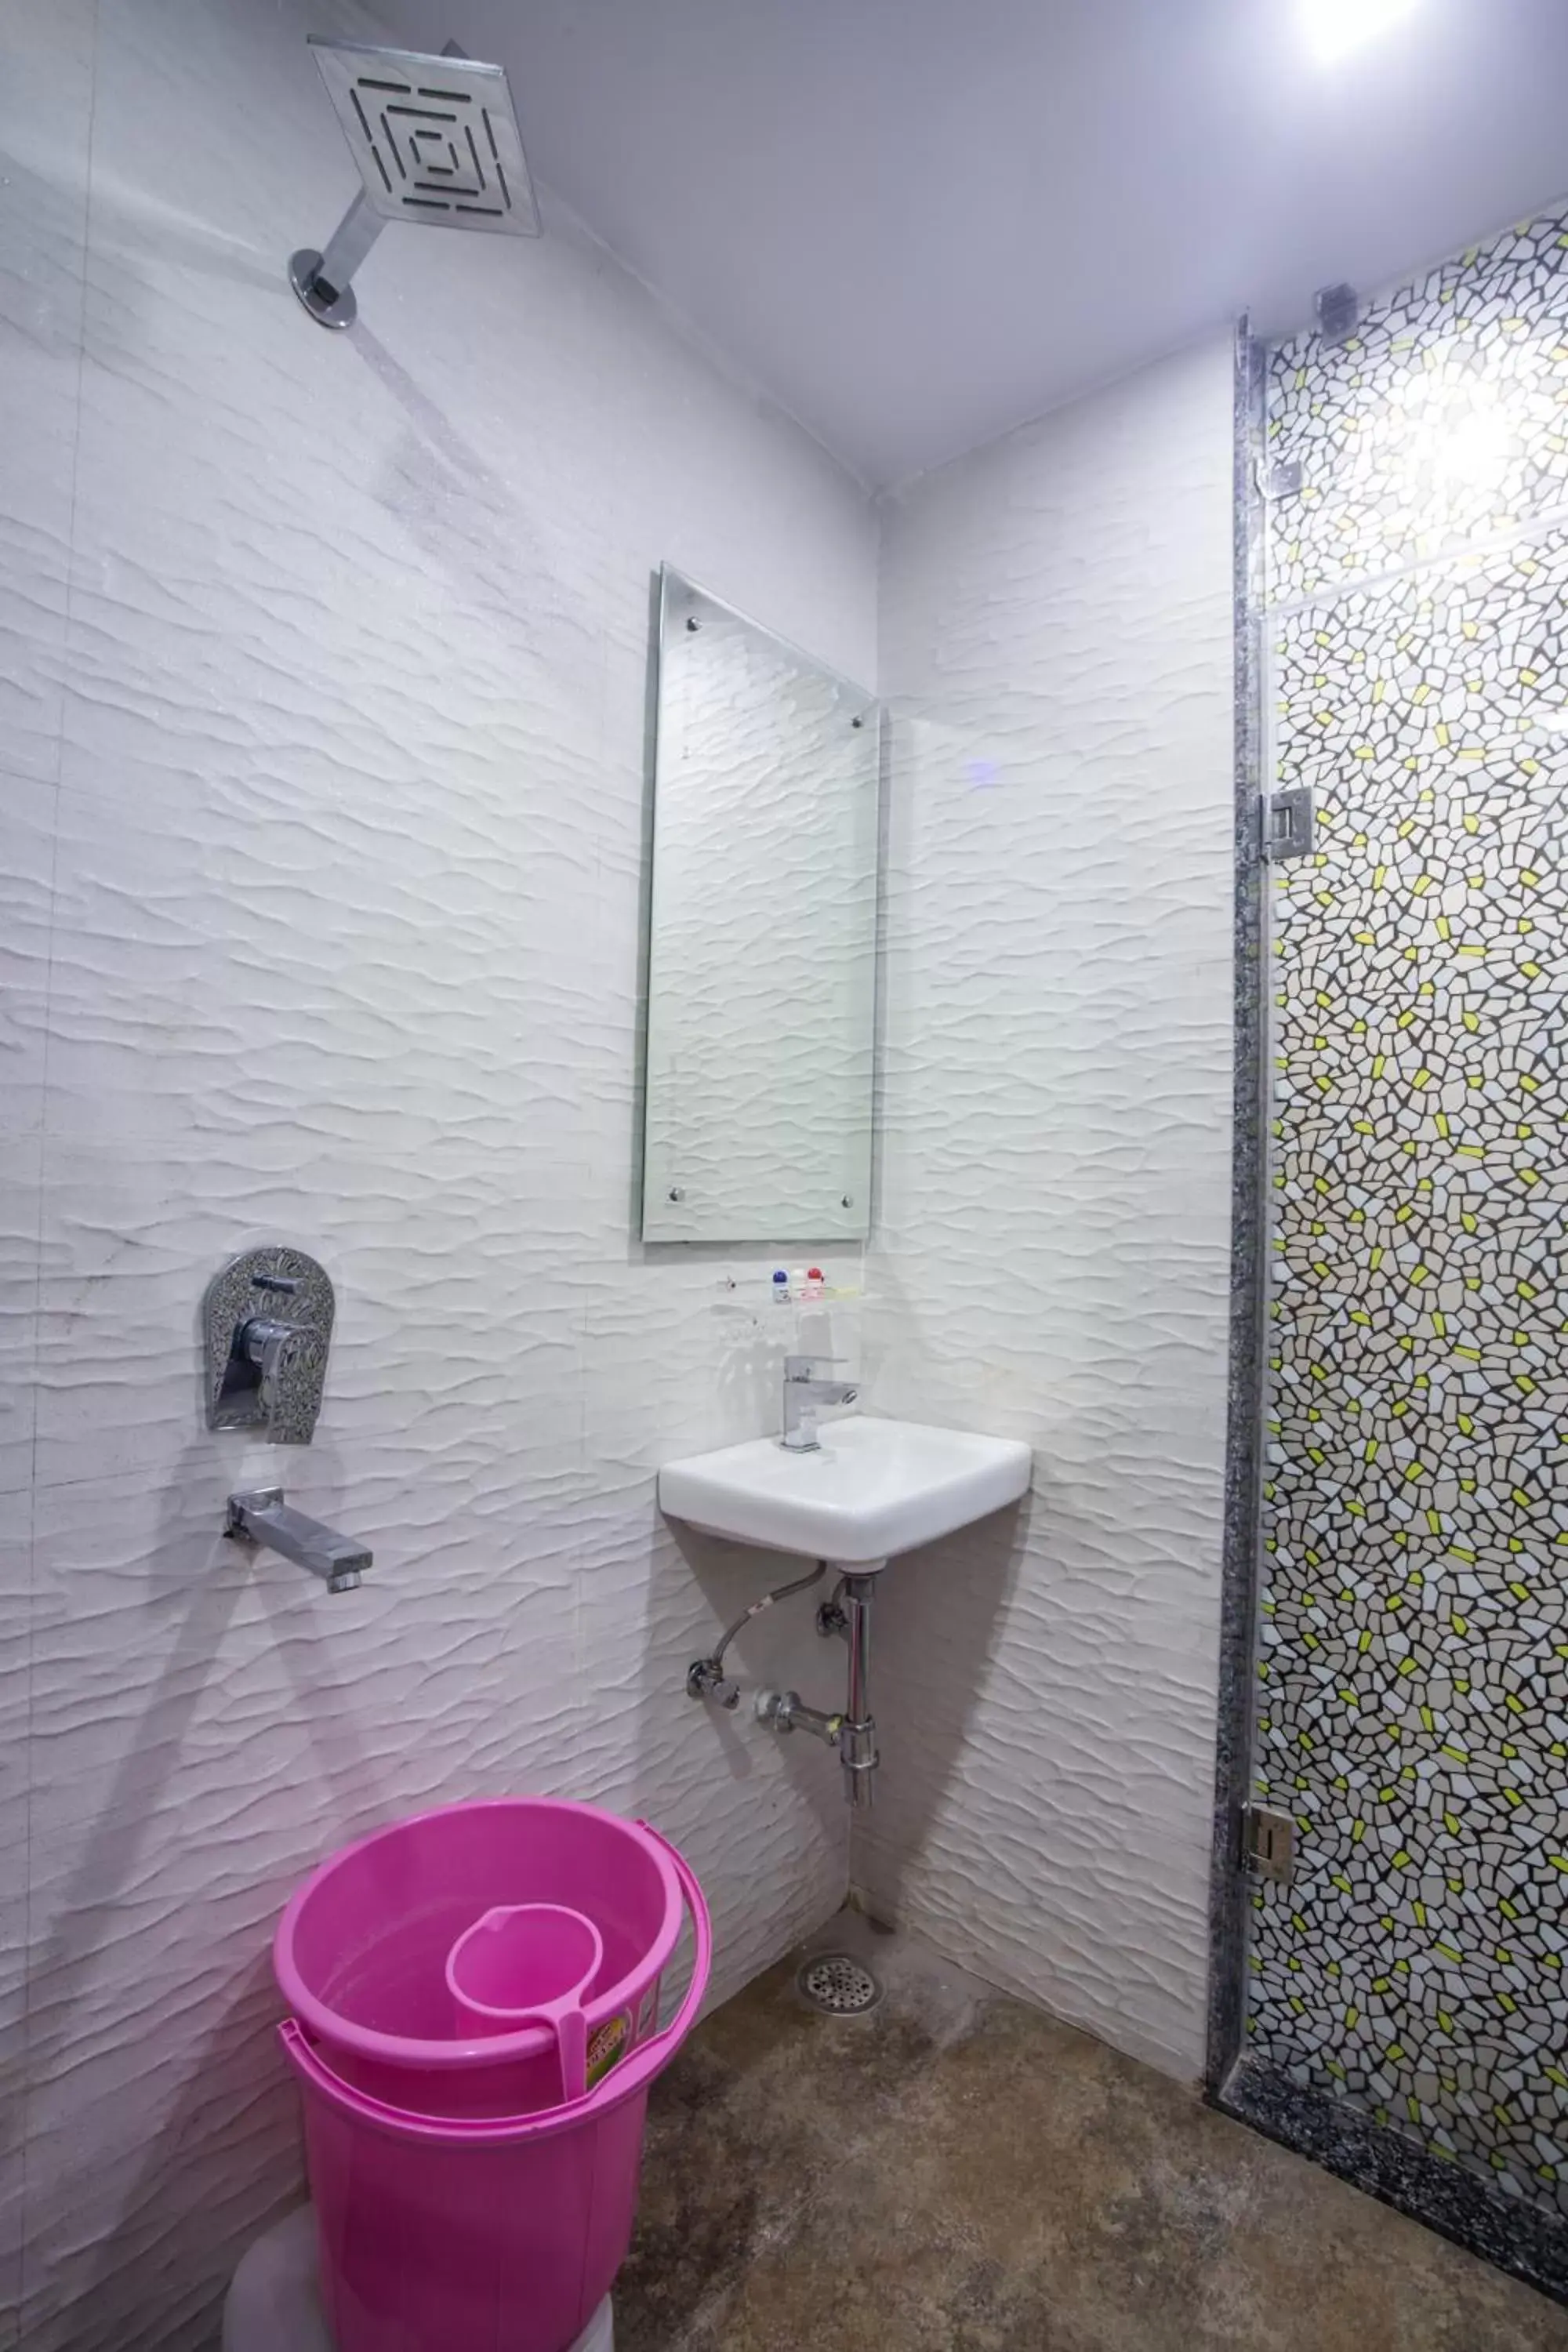 Bathroom in Hotel Harsha International